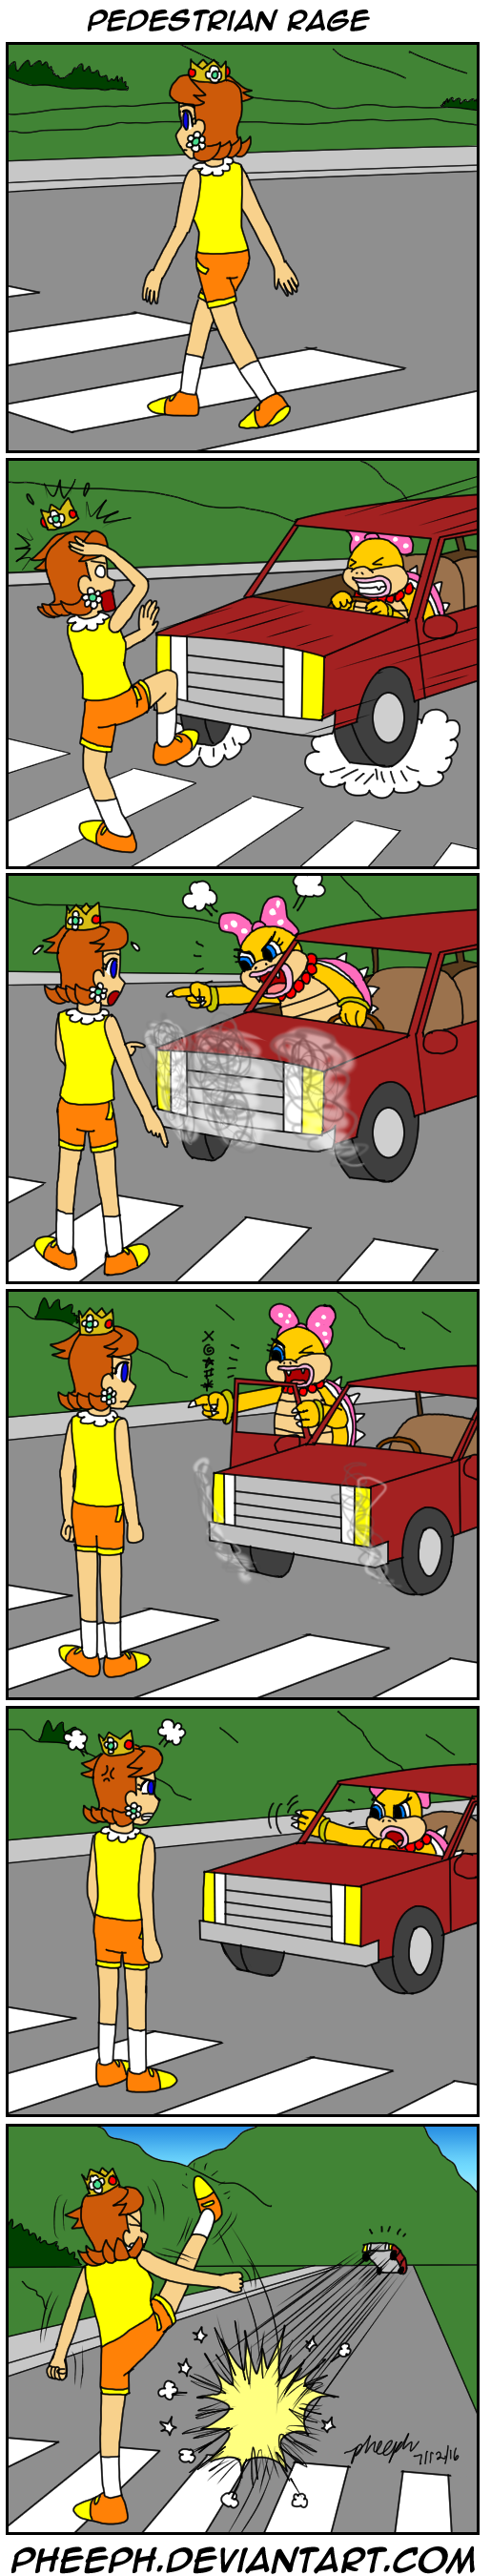 Page 20 - Pedestrian Rage